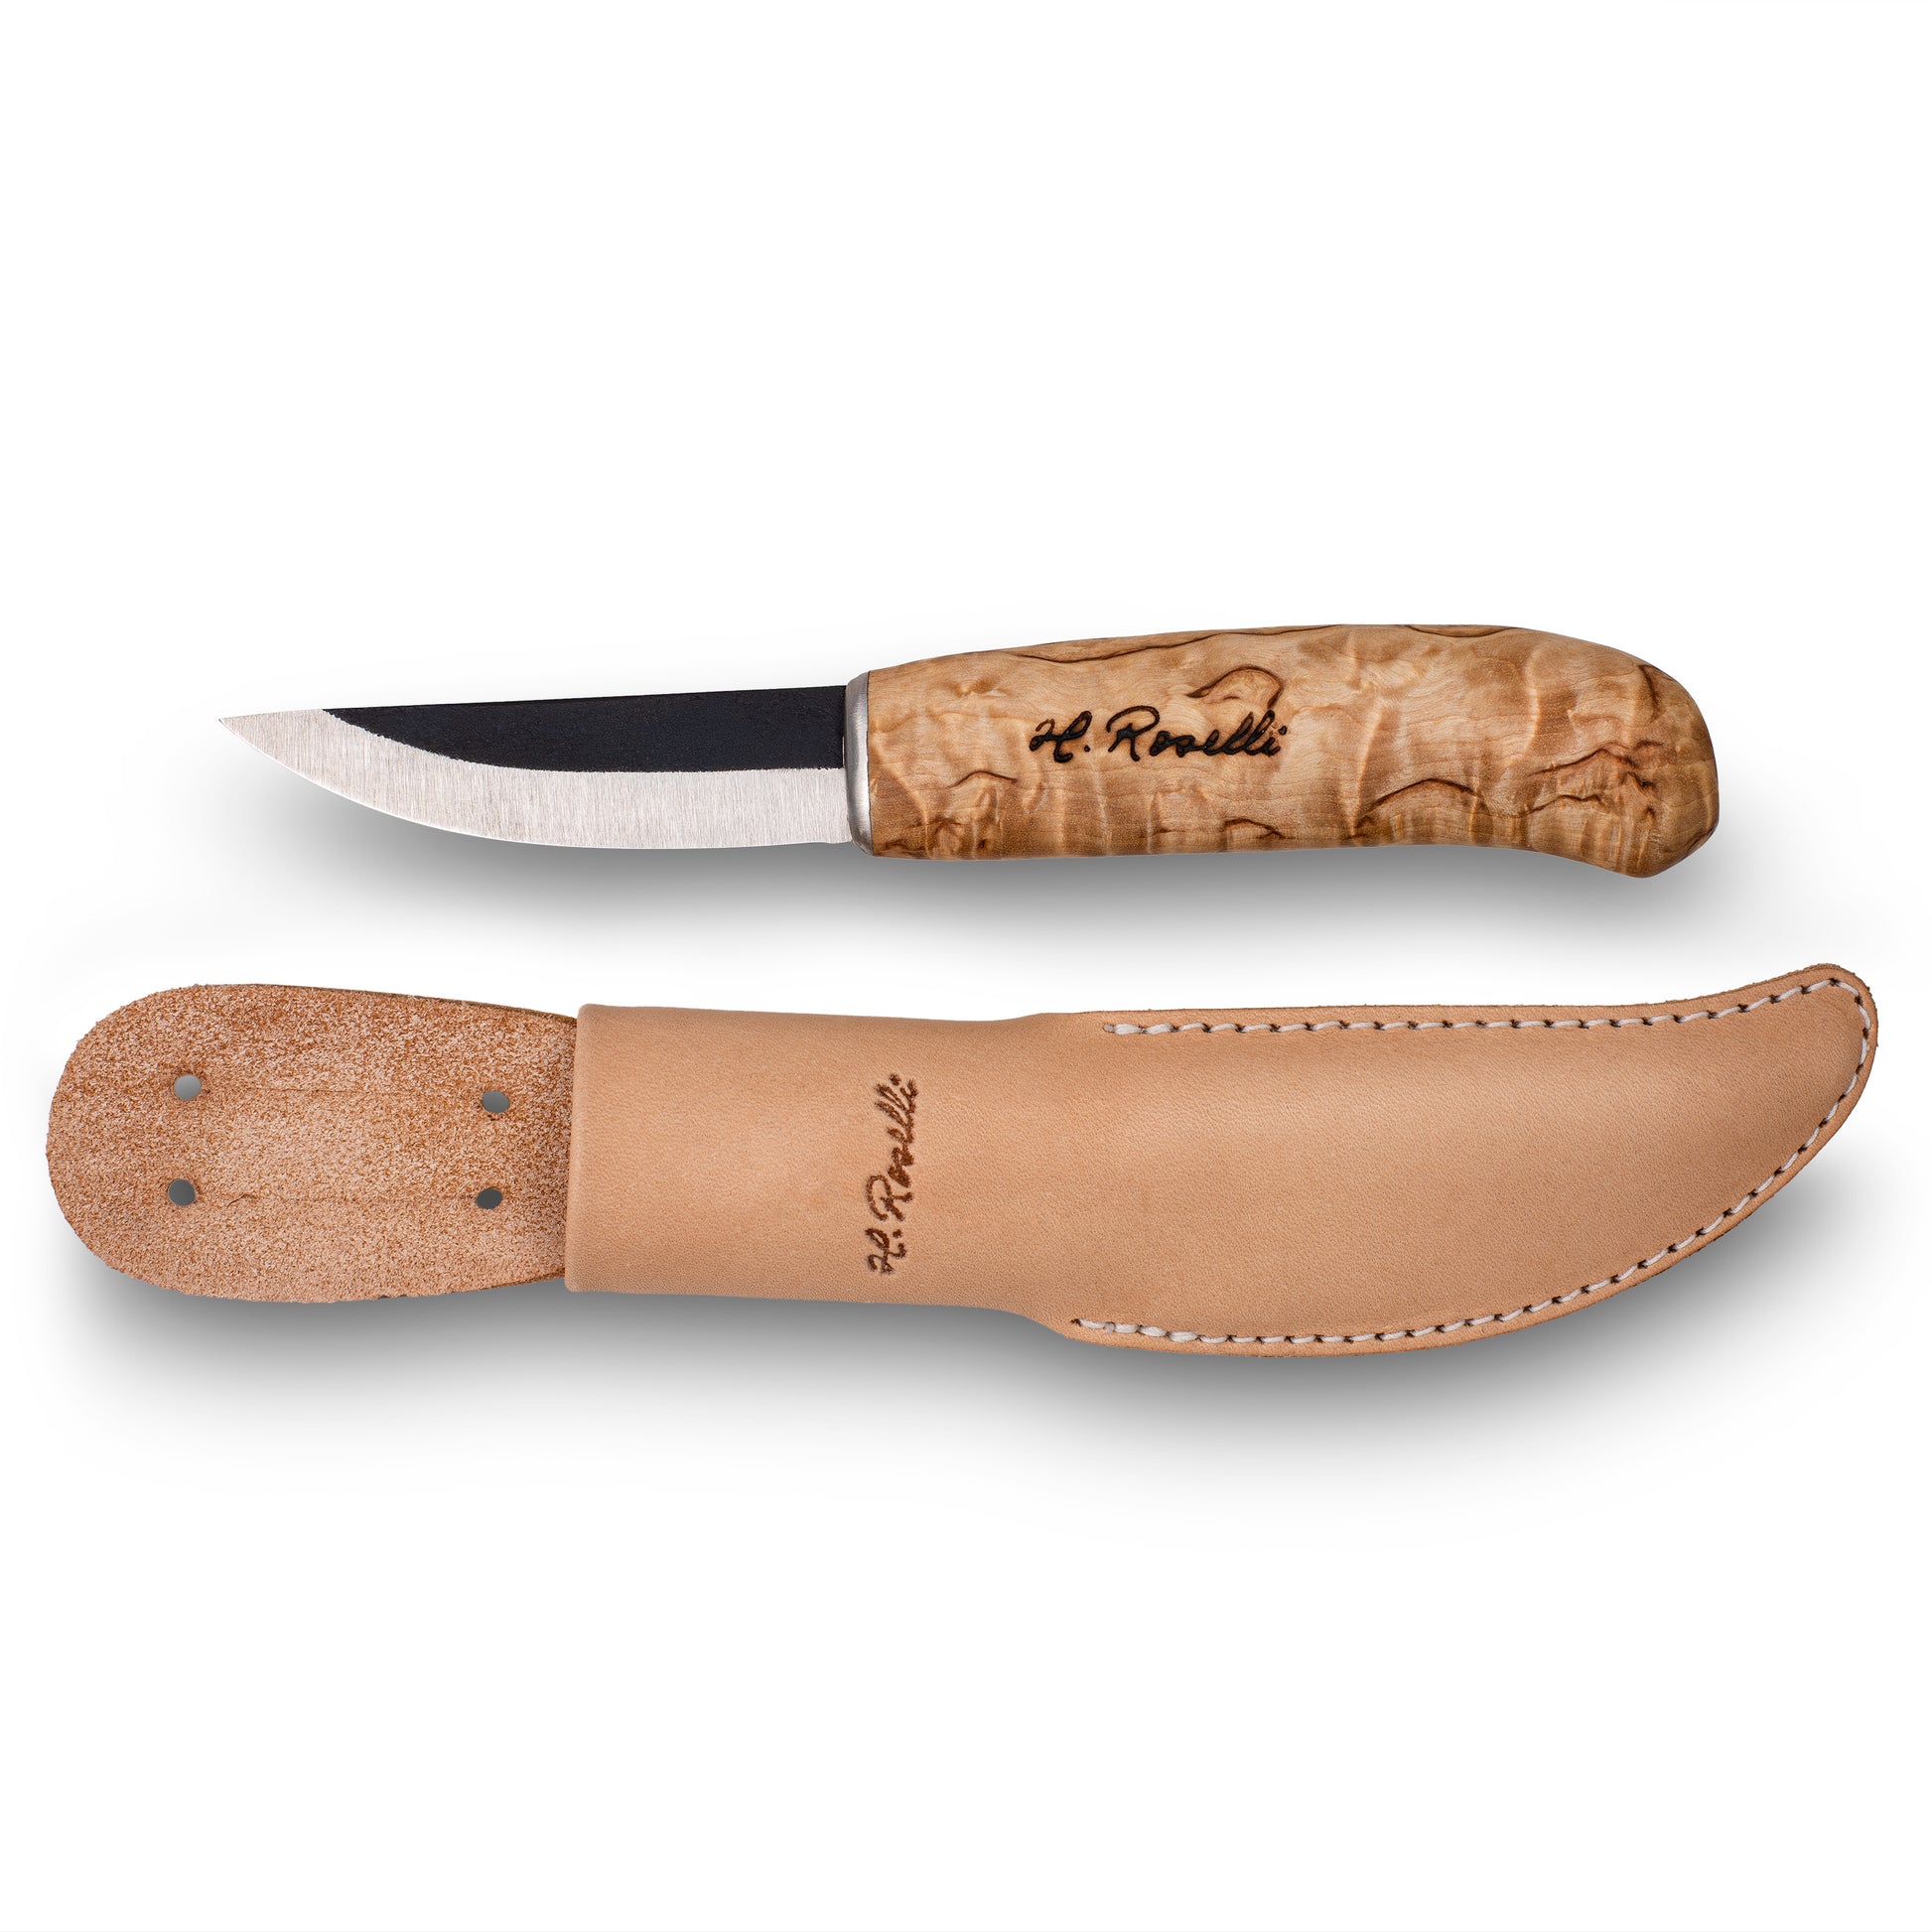 Roselli R730 Chinese Chef Knife – Ragweed Forge